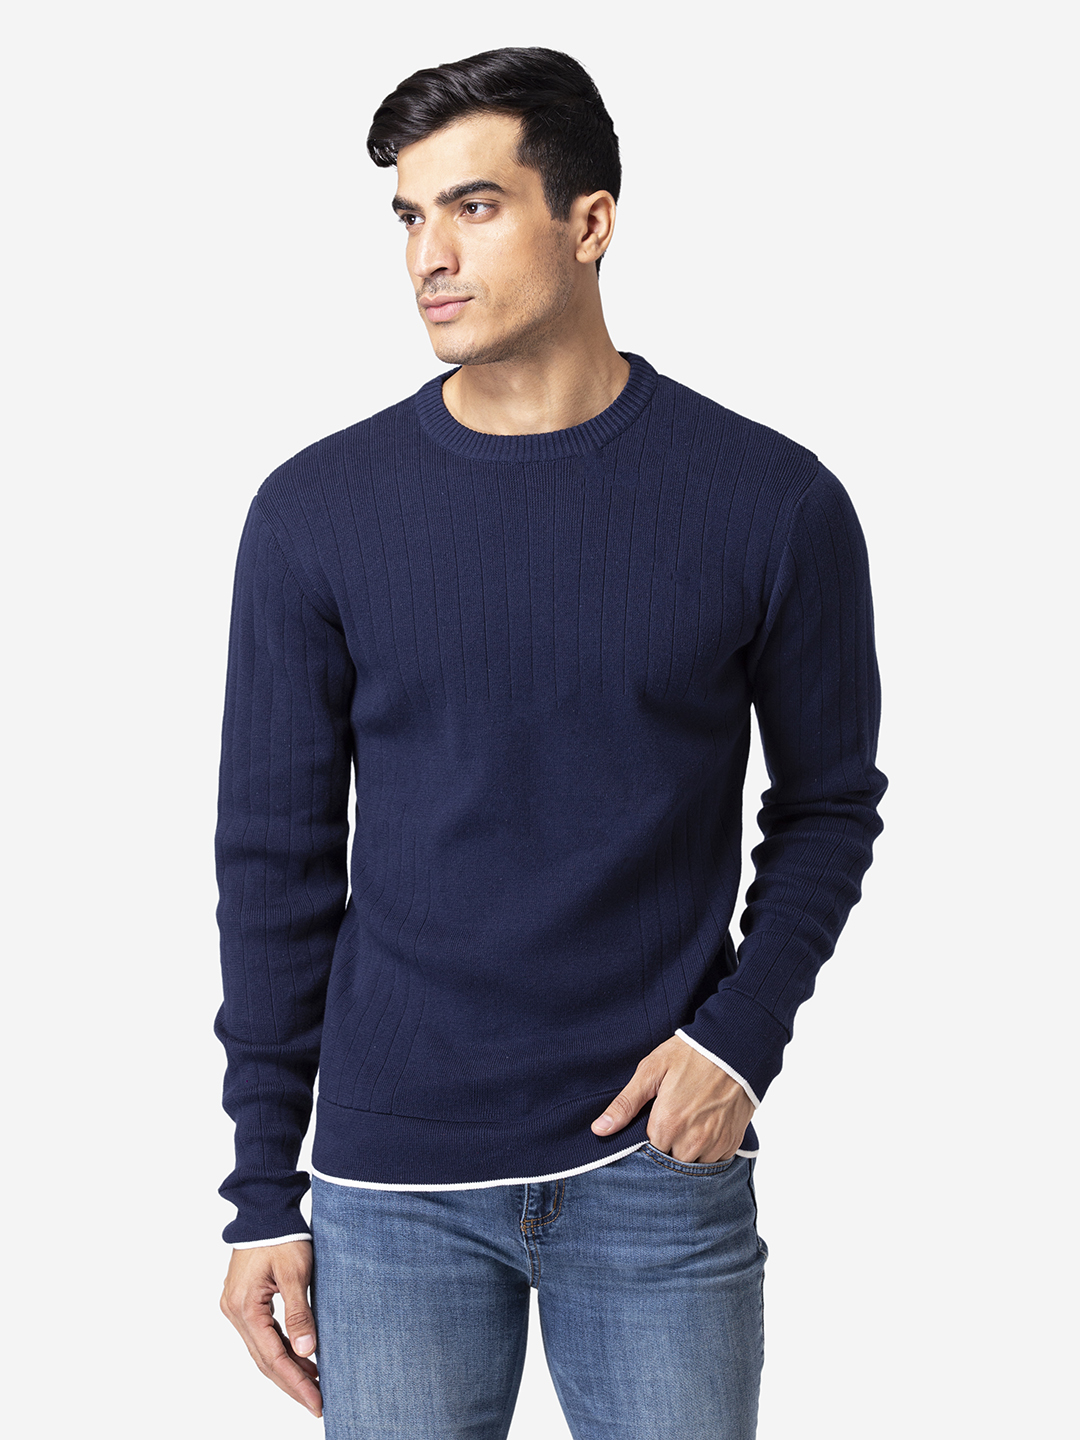 Allen Cooper Sweaters For Men - Allen Cooper